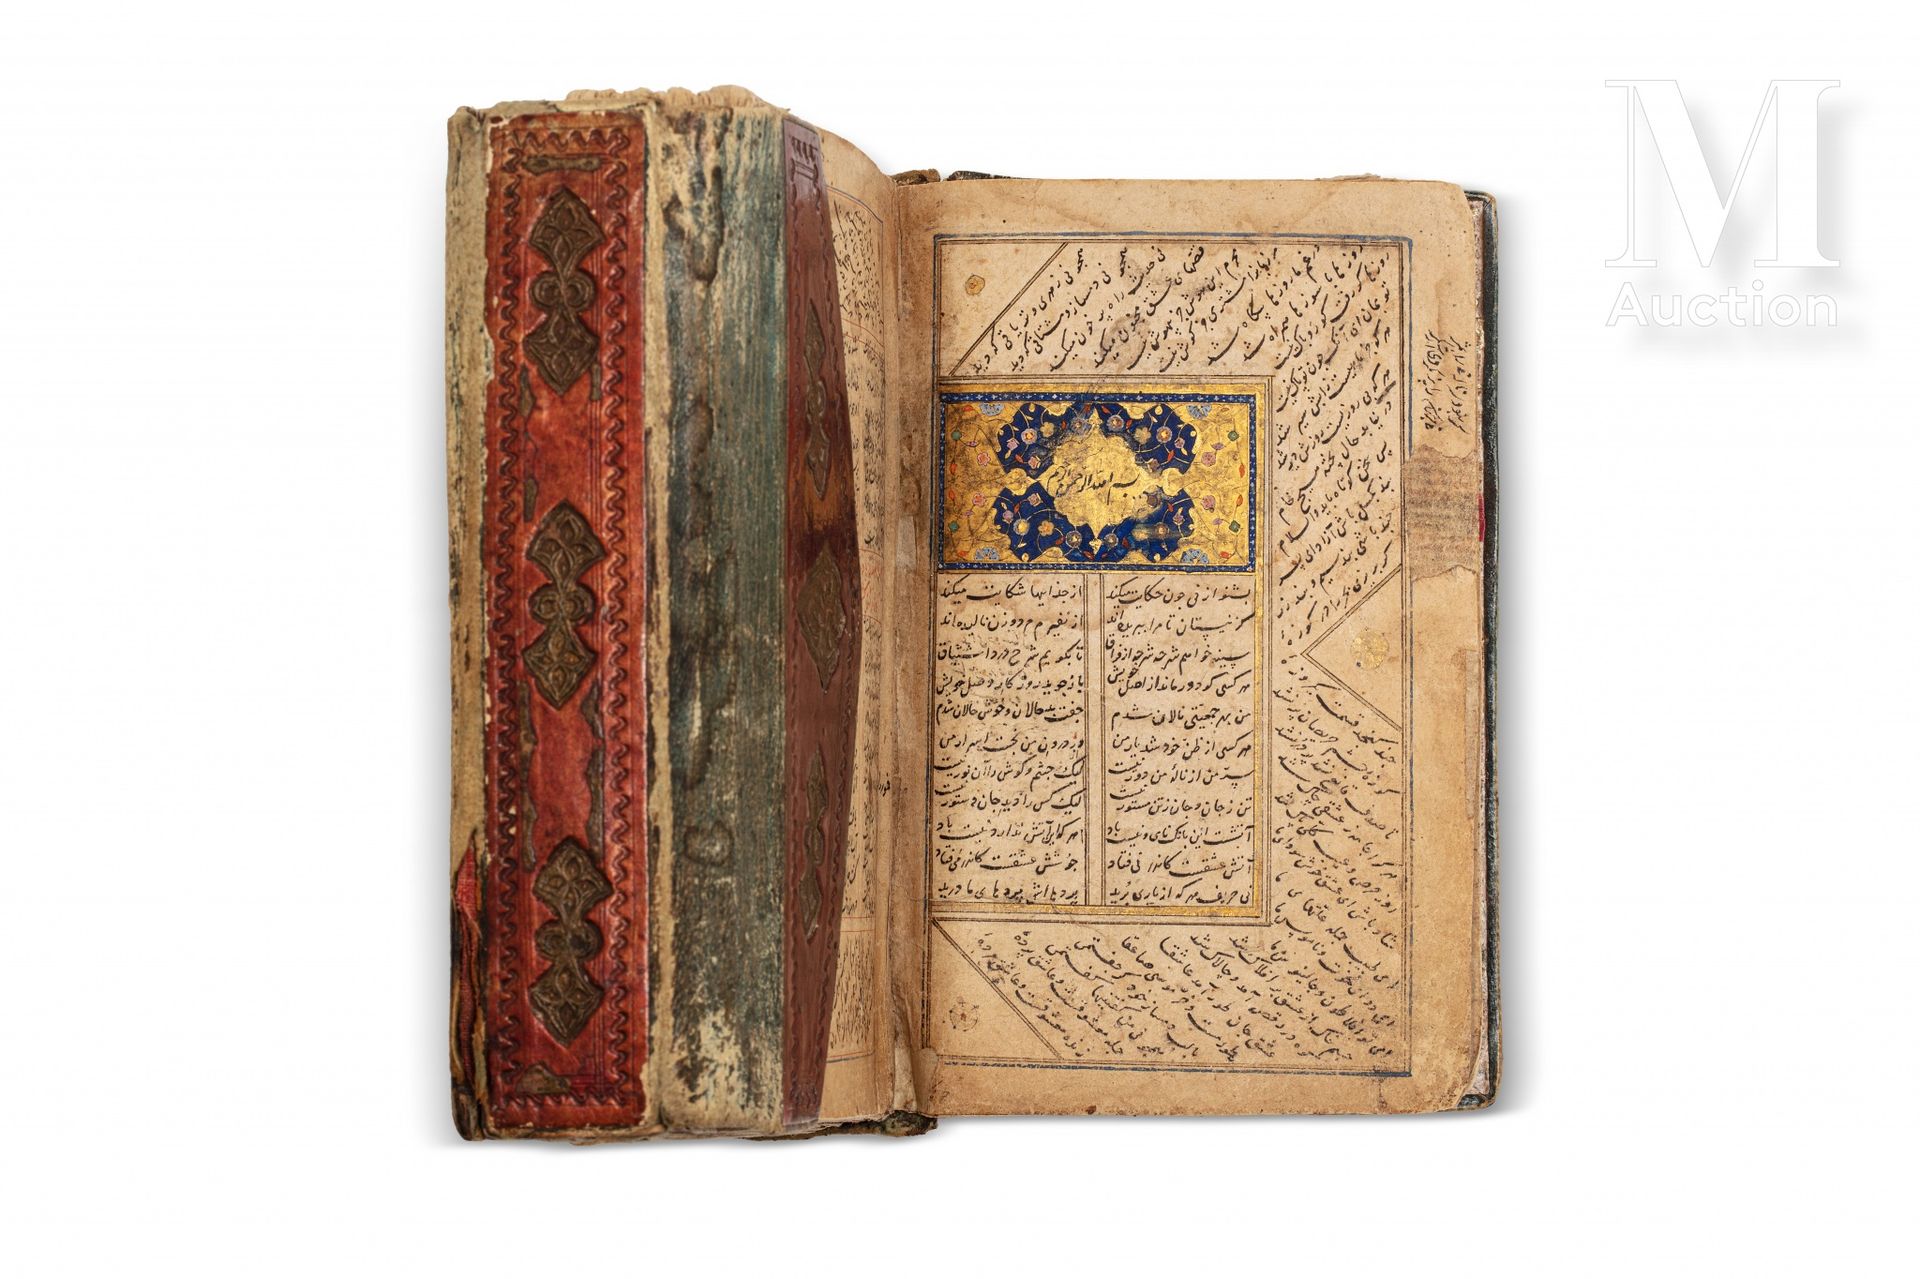 Mathnawi de Jalal al-Dîn Rûmî (m.1273) Iran, dated 846H. (=1442 AD)

Persian man&hellip;